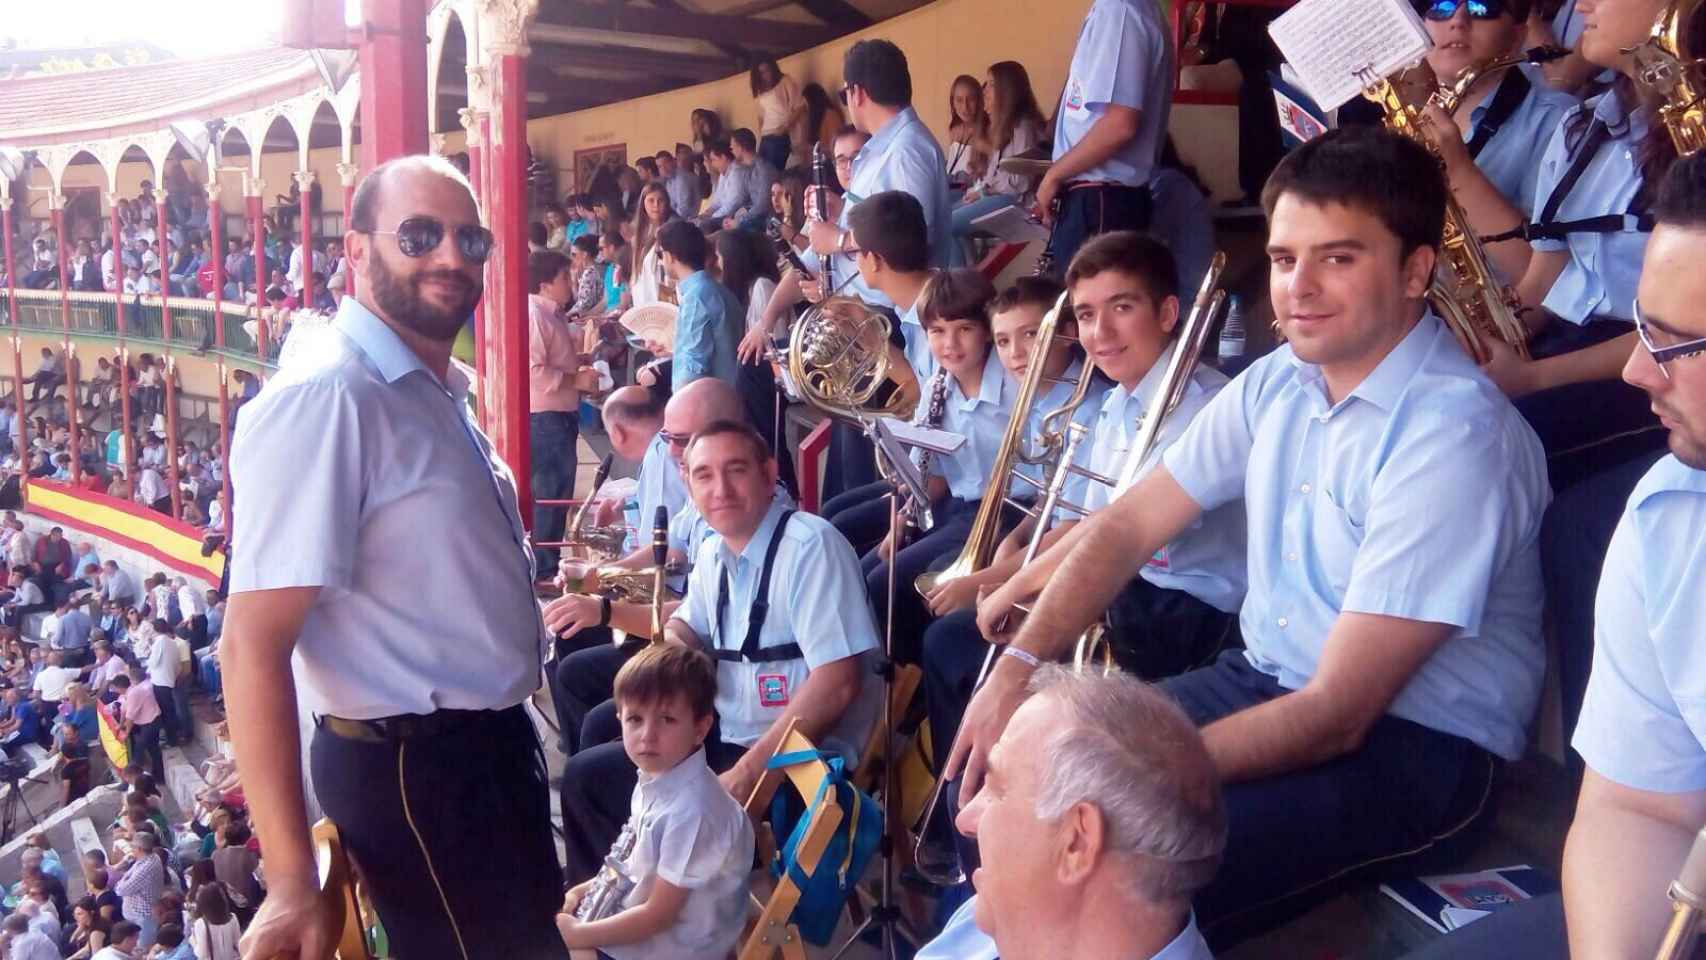 La banda de música de La AMI (Asociación Musical Iscariense) cumple 25 años en el coso de Valladolid